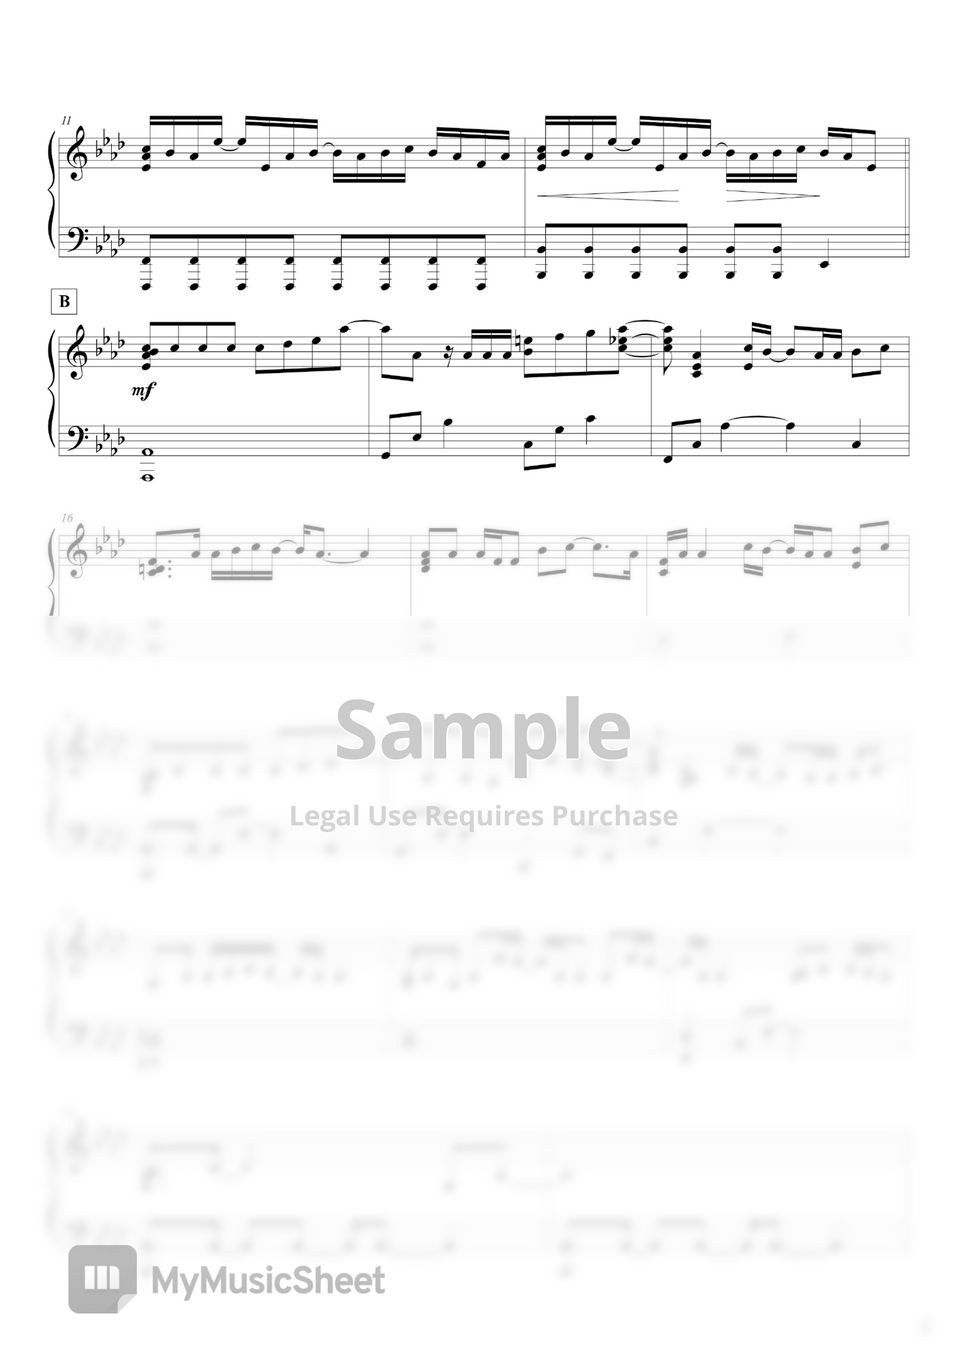 Official HIGE DANdism "Pretender" Piano cover by Keigo